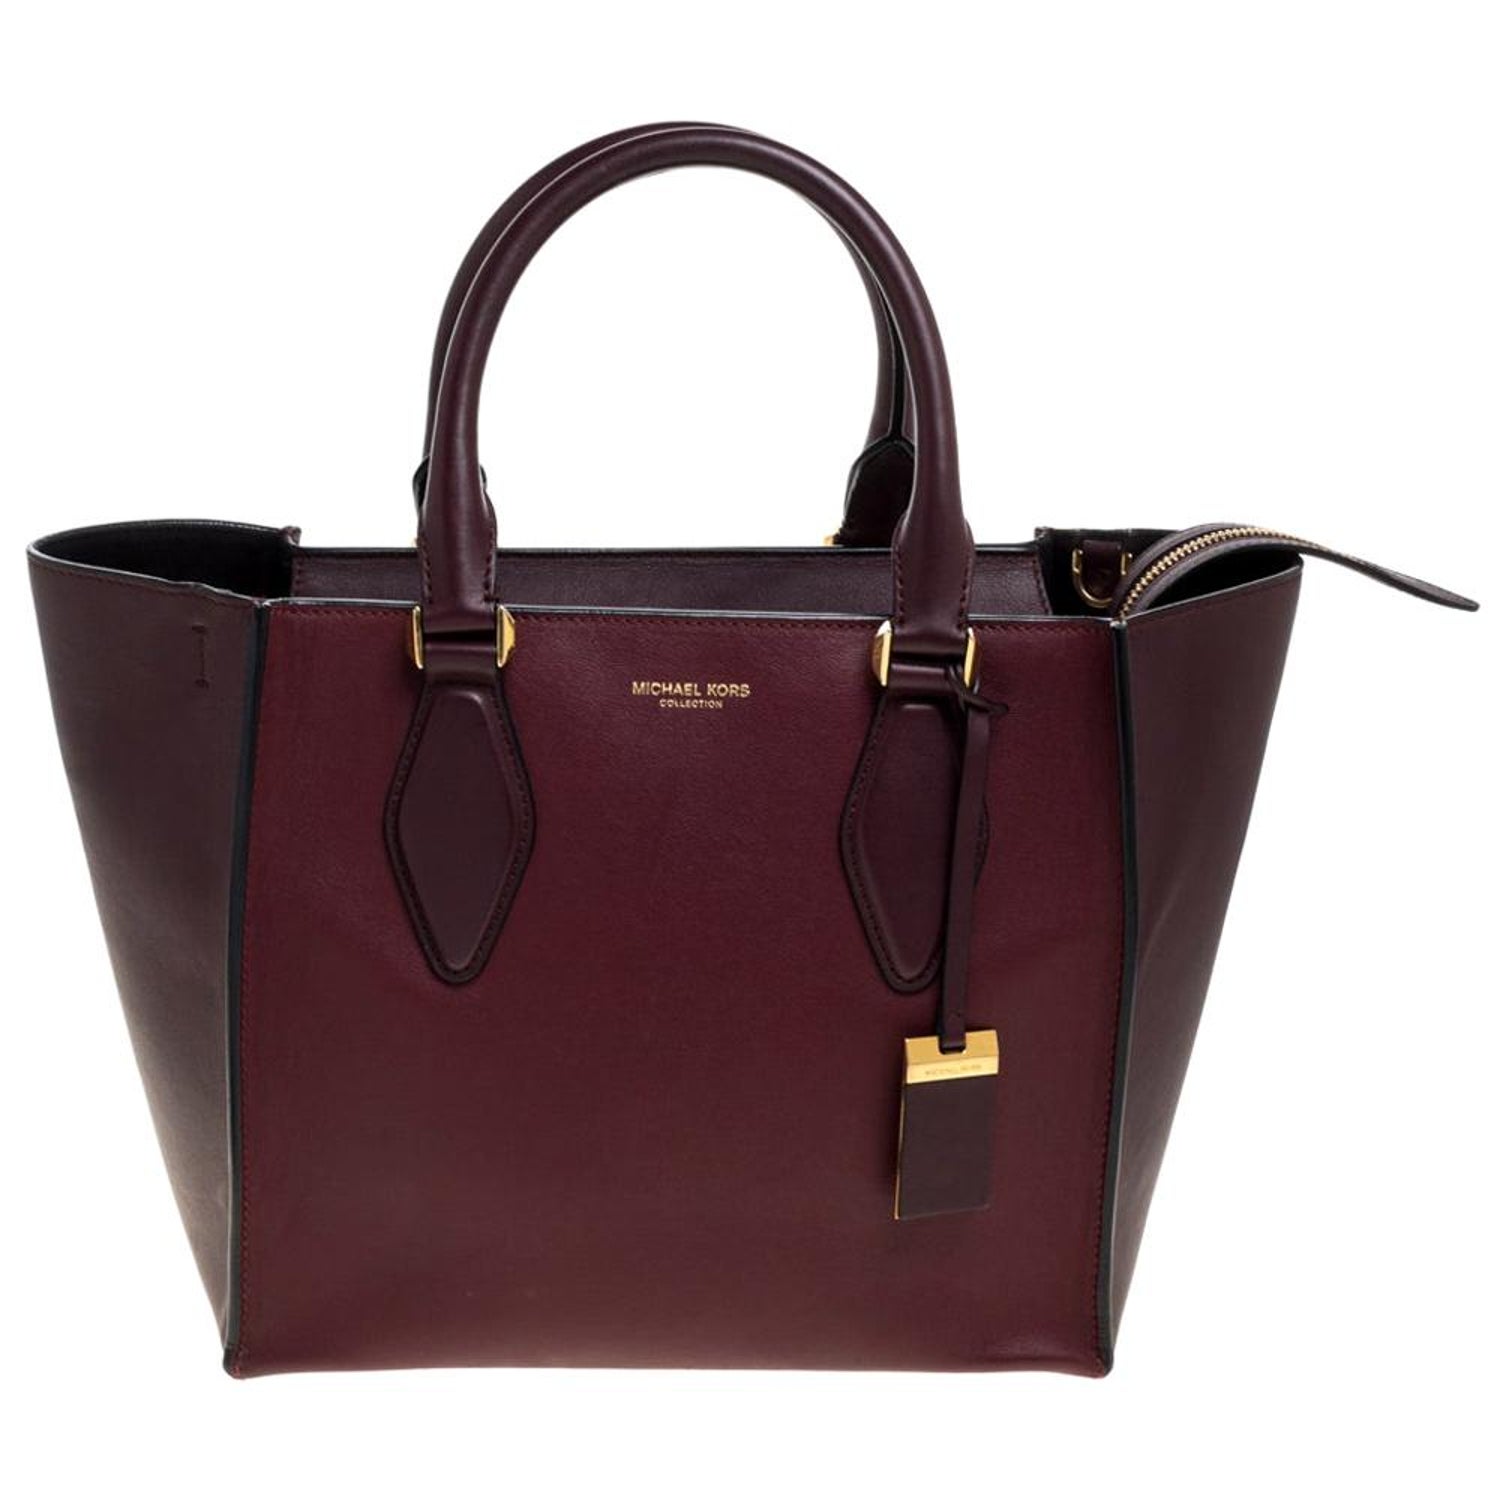 Michael Kors Collection Handbags - 2 For Sale on 1stDibs